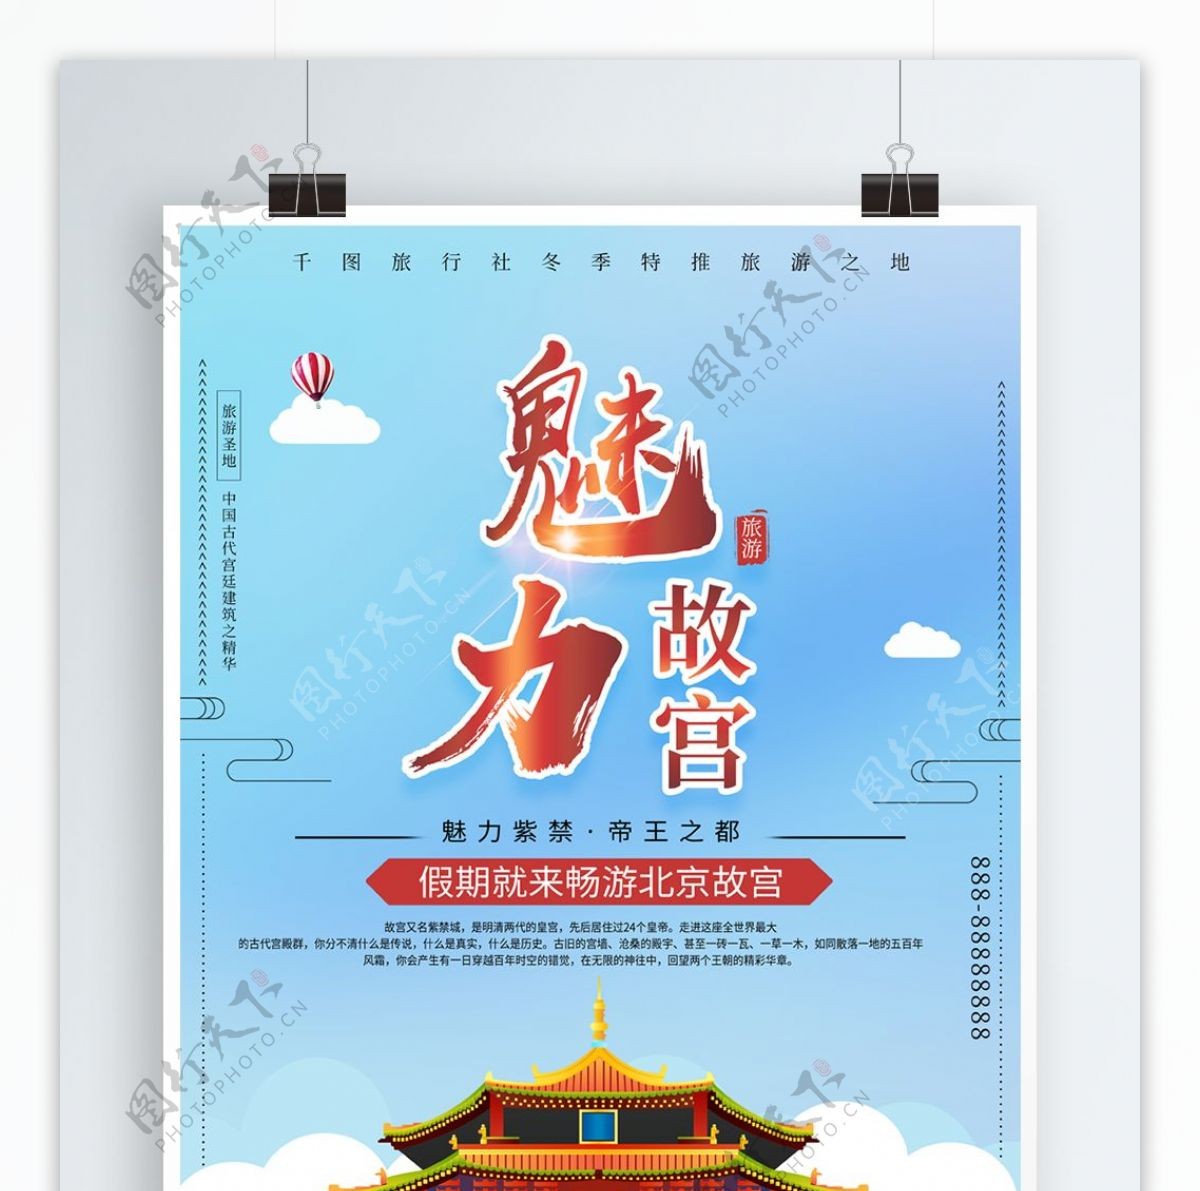 魅力故宫旅游商业宣传海报